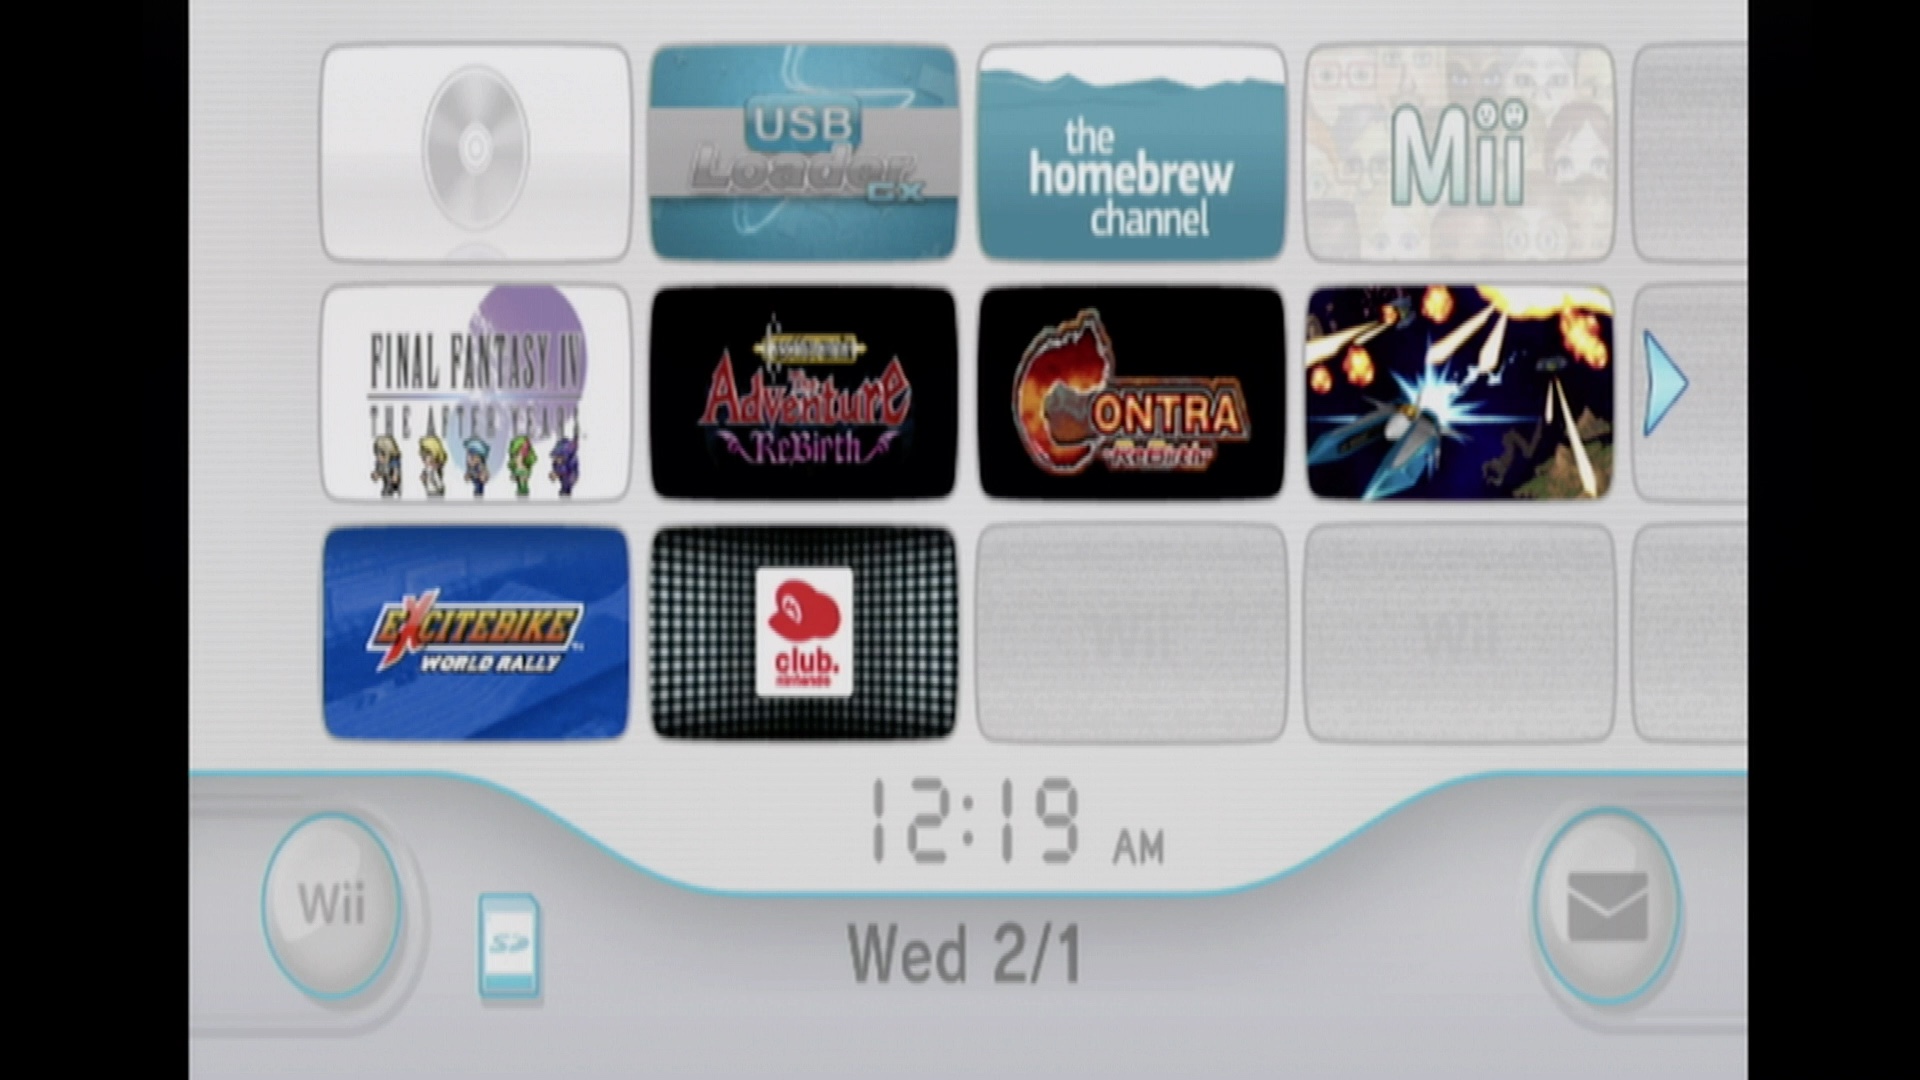 Wii menu